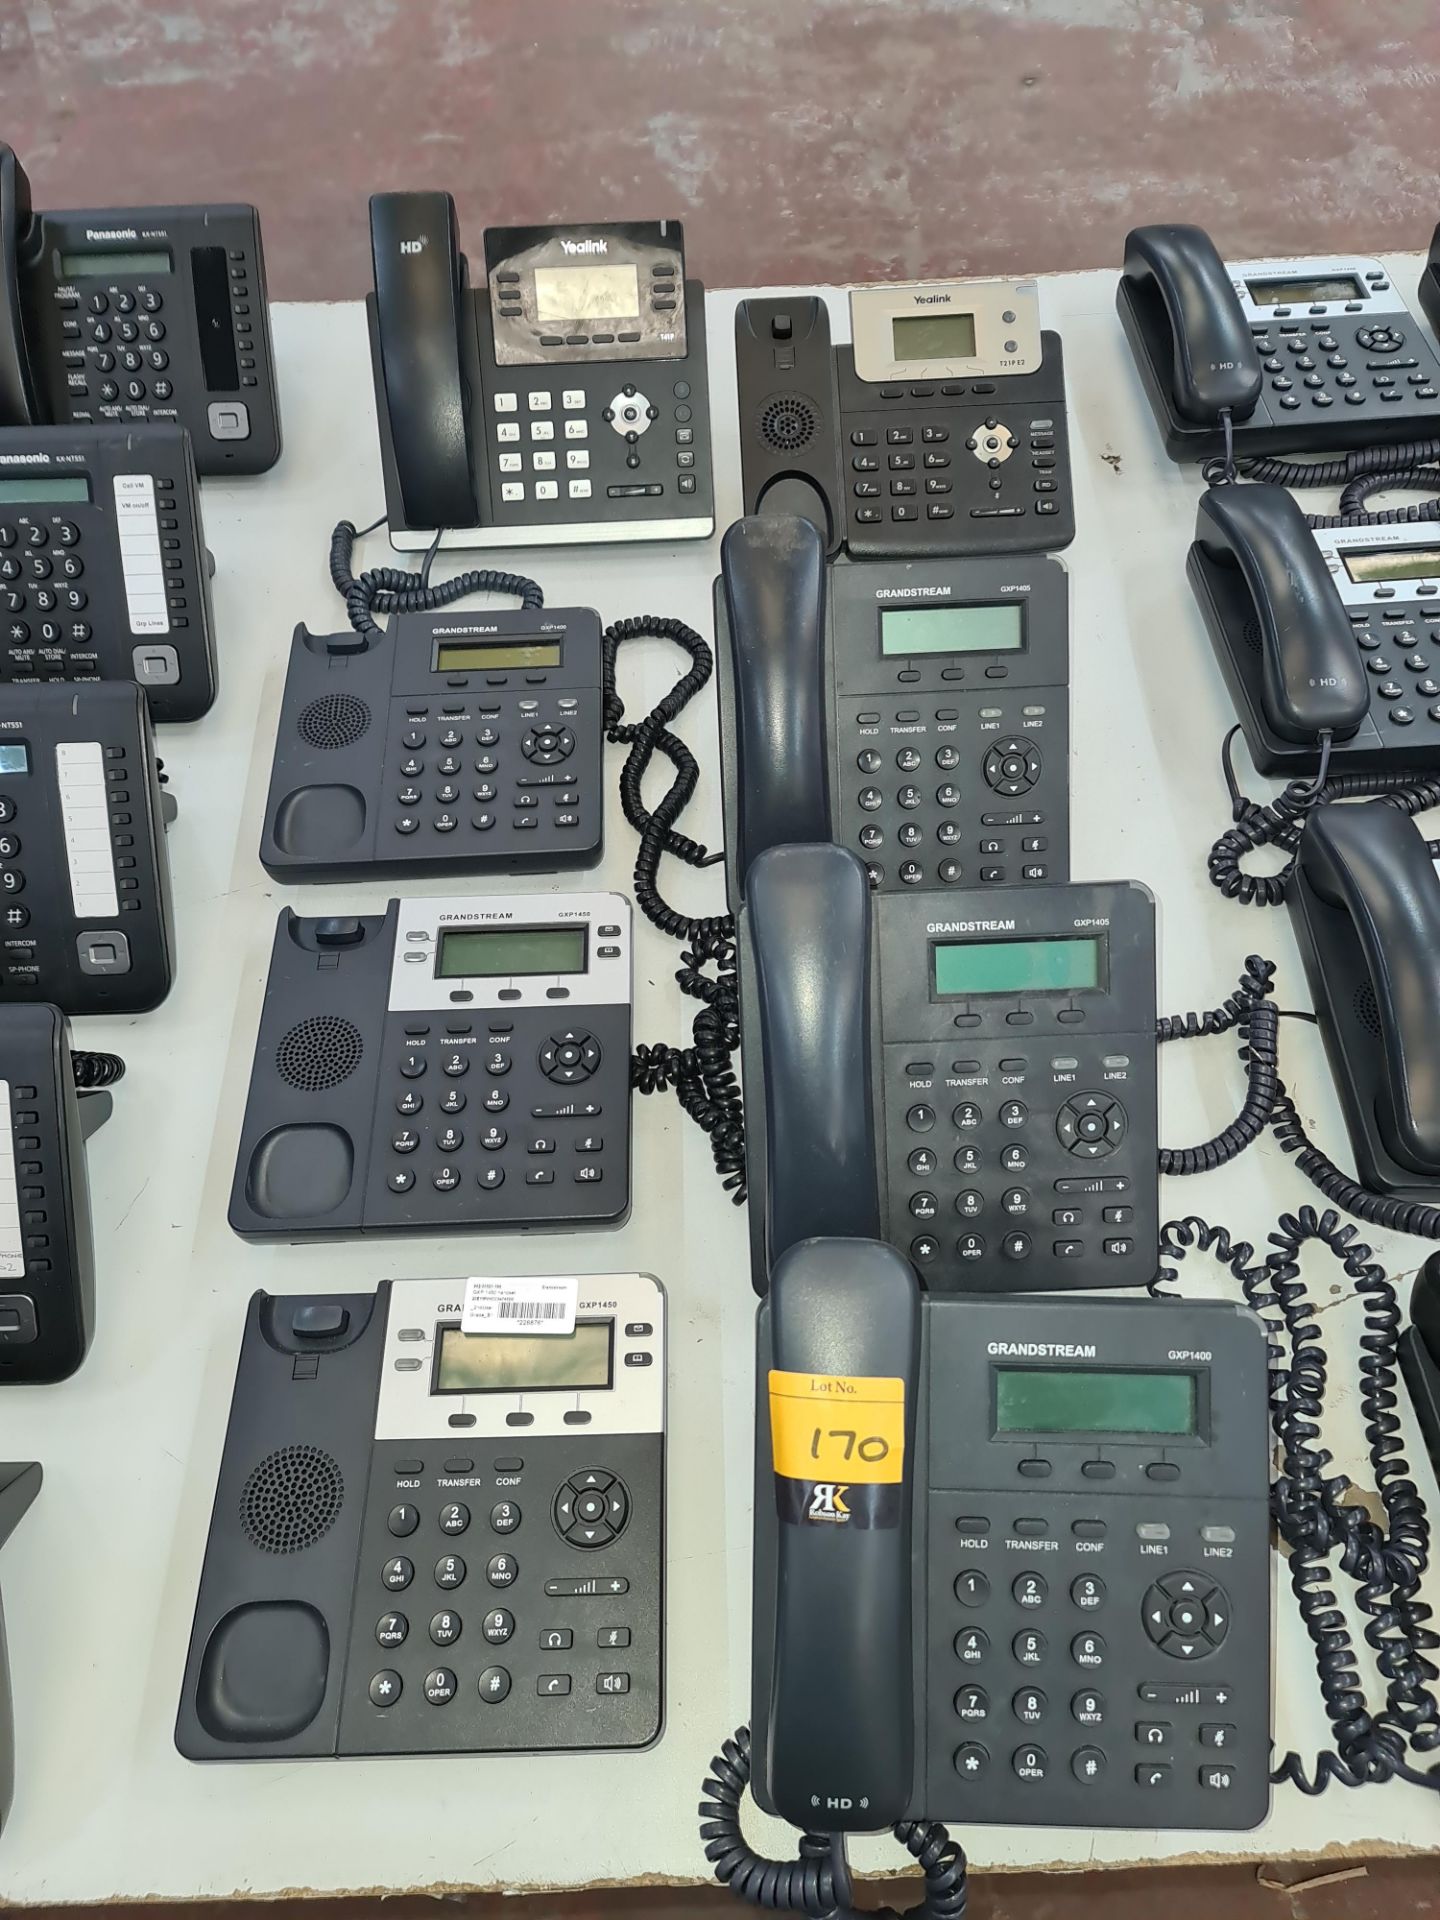 6 off Grandstream telephone handsets comprising 3 off model GXP1400/1405 complete handsets & 3 off m